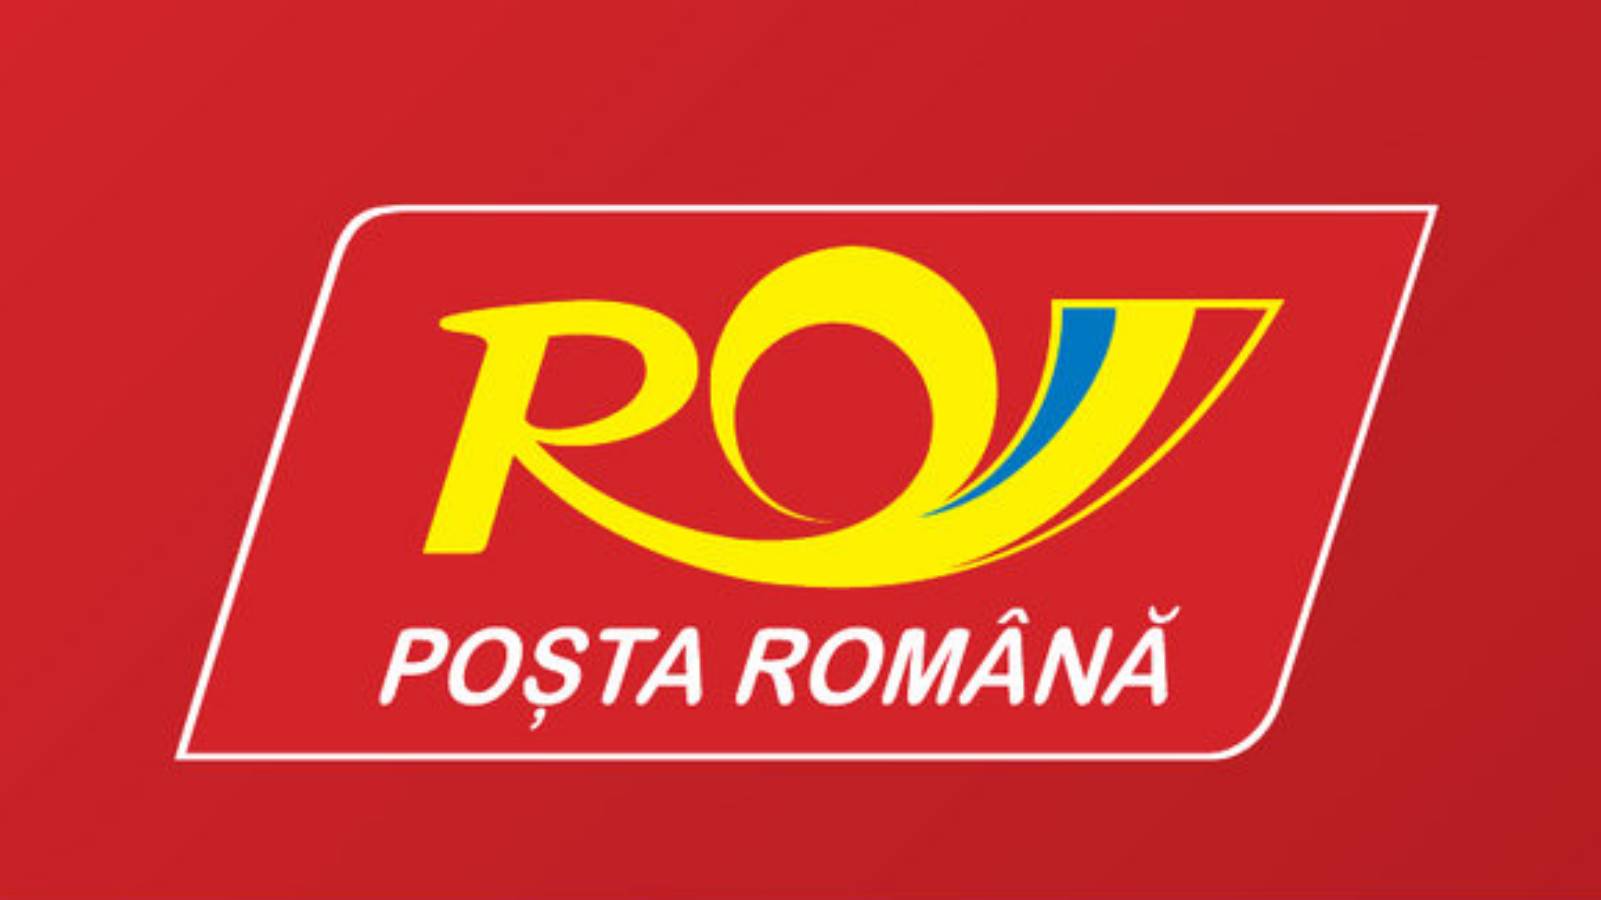 Rumänsk post ändrad